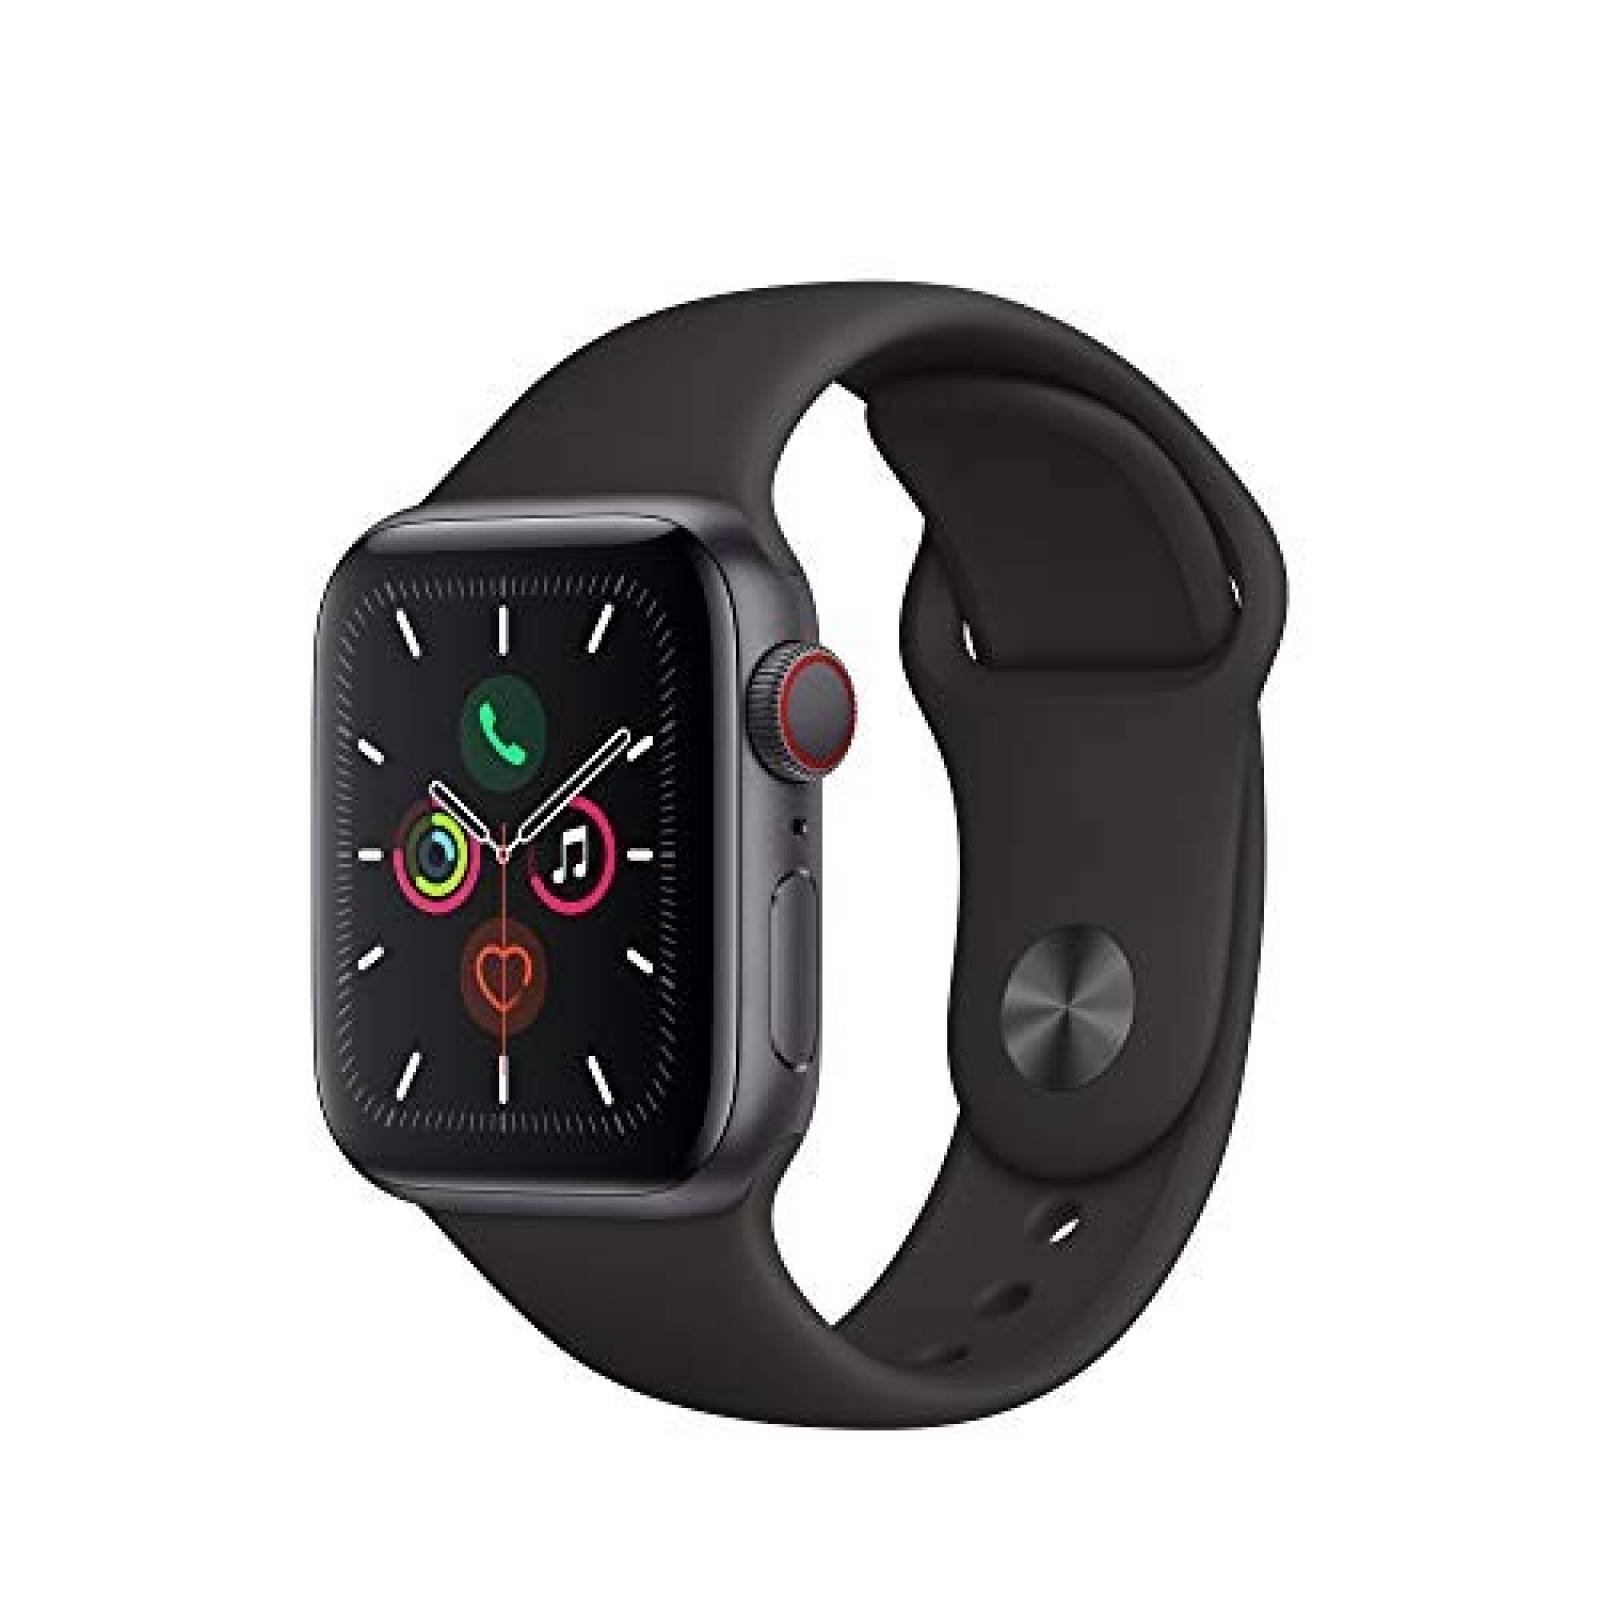 Smartwatch Apple Watch Series 5 (GPS + Celular, 40mm) -Gris